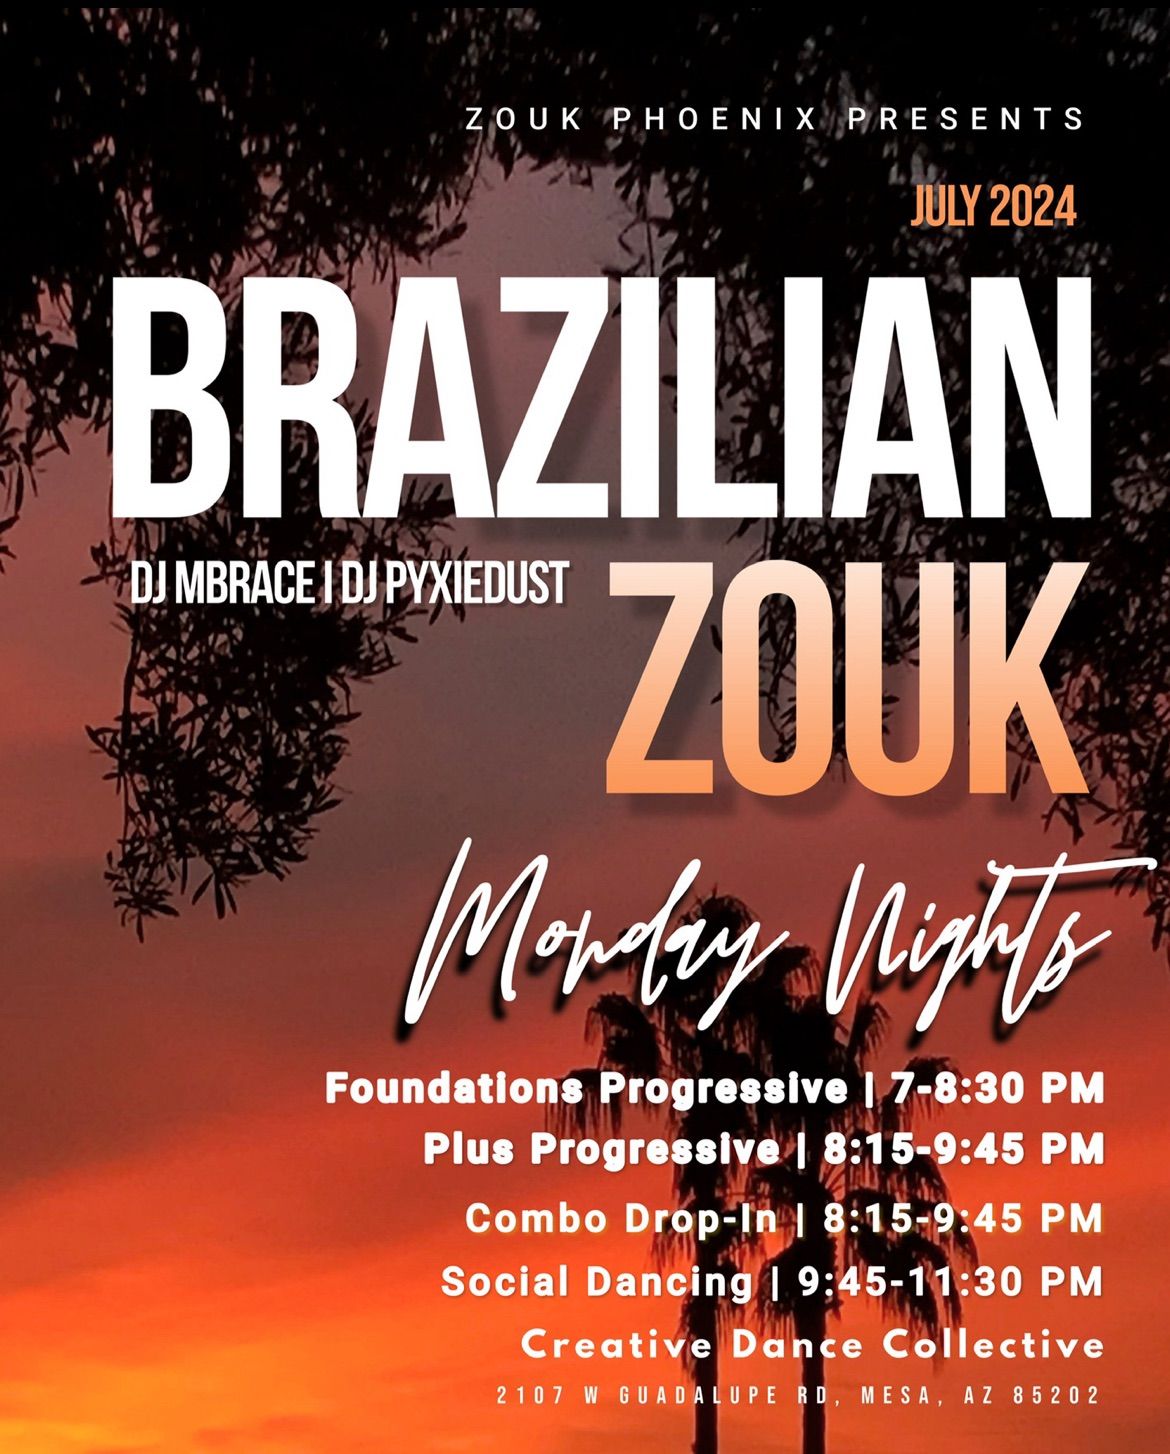 Monday Night Brazilian Zouk in July